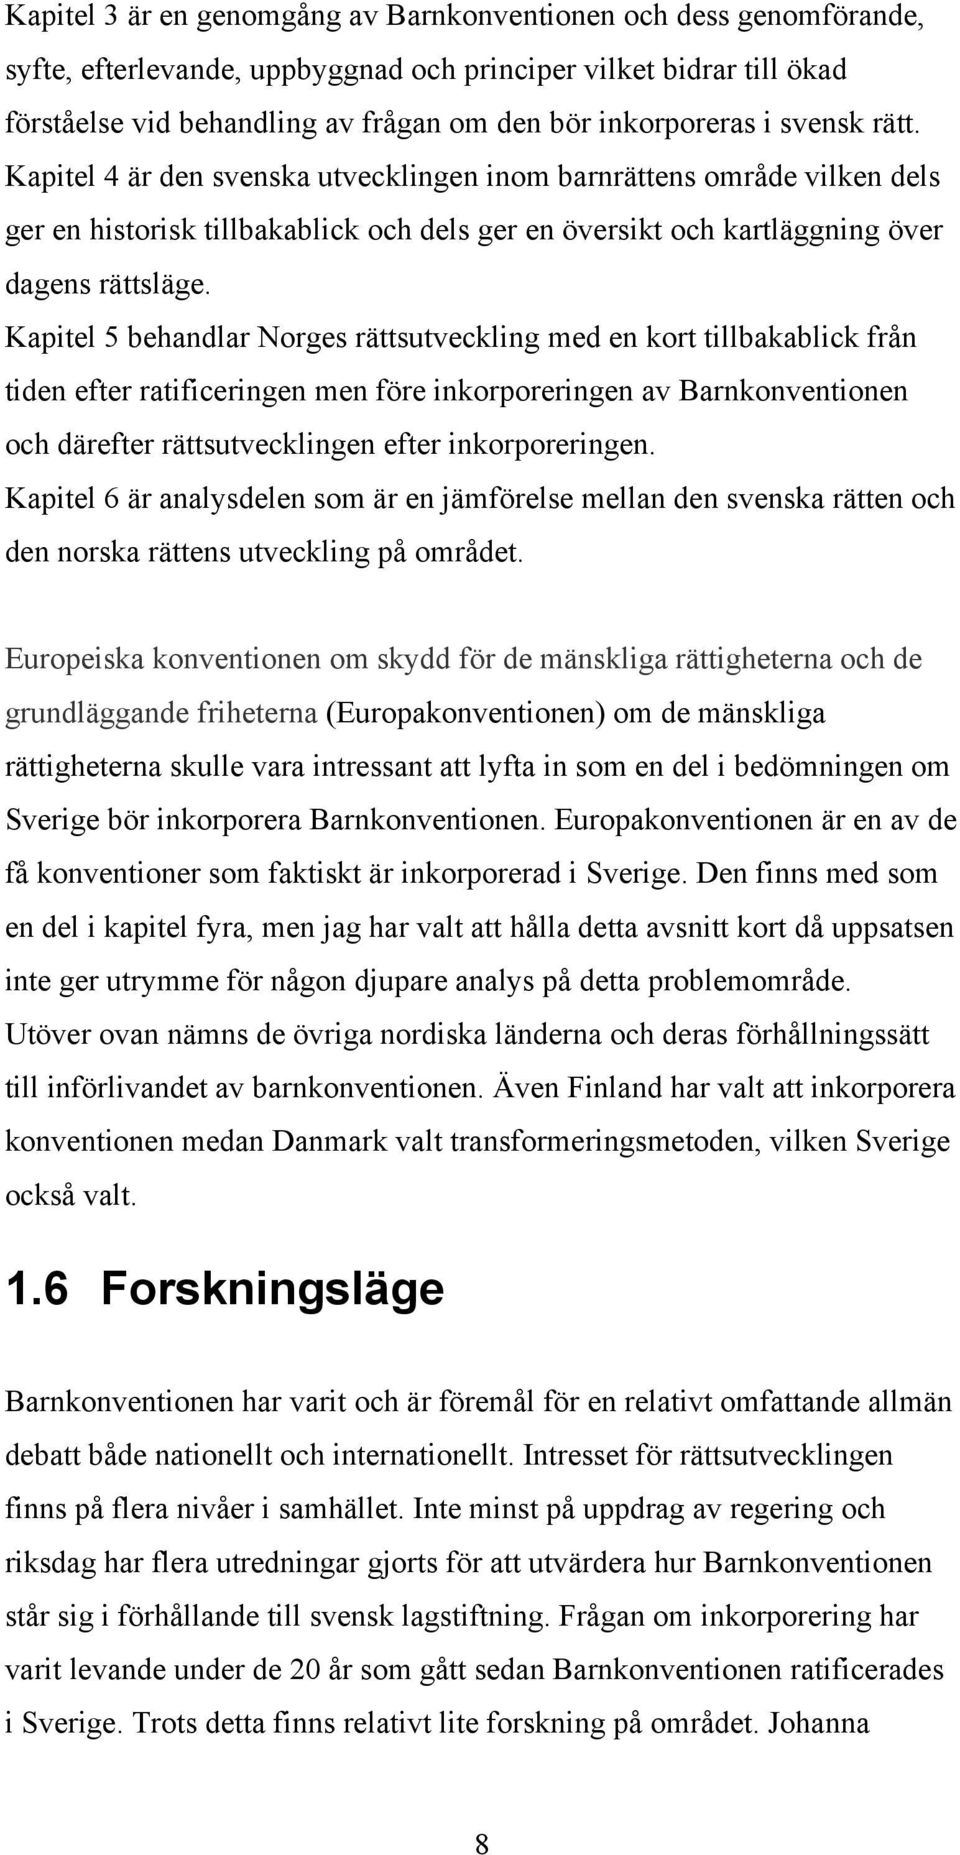 Kapitel 5 behandlar Norges rättsutveckling med en kort tillbakablick från tiden efter ratificeringen men före inkorporeringen av Barnkonventionen och därefter rättsutvecklingen efter inkorporeringen.